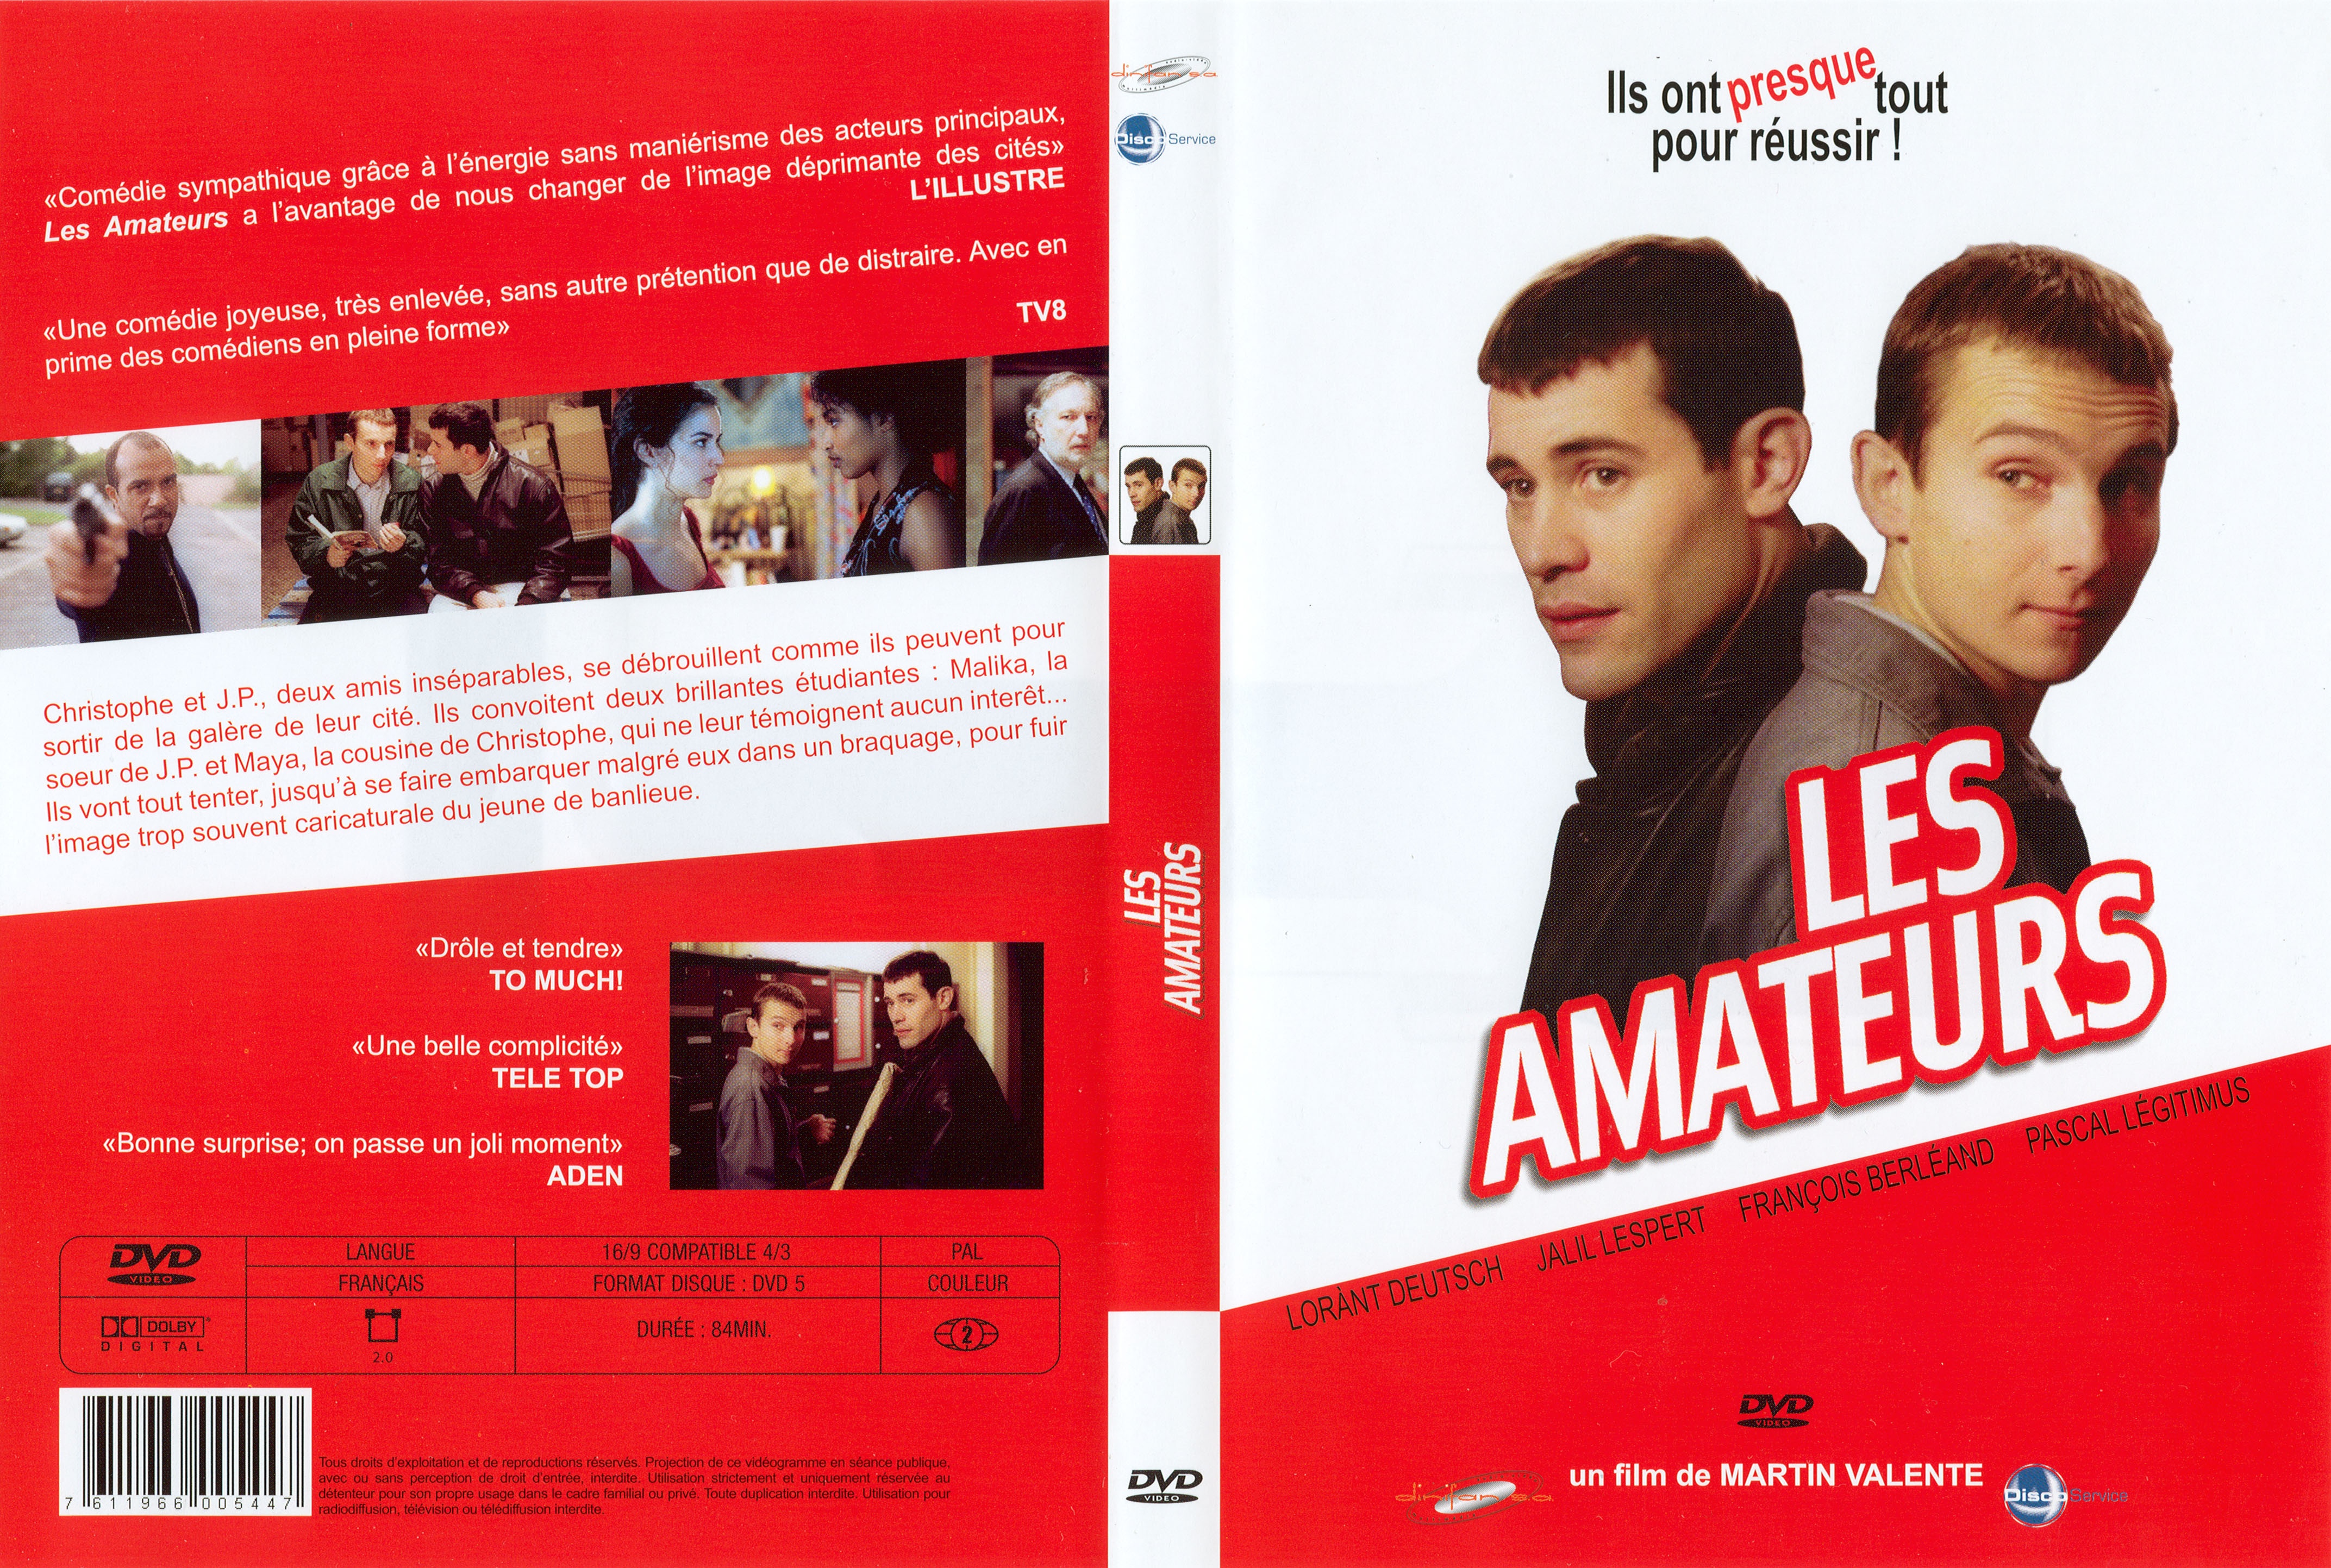 Jaquette DVD Les amateurs v2